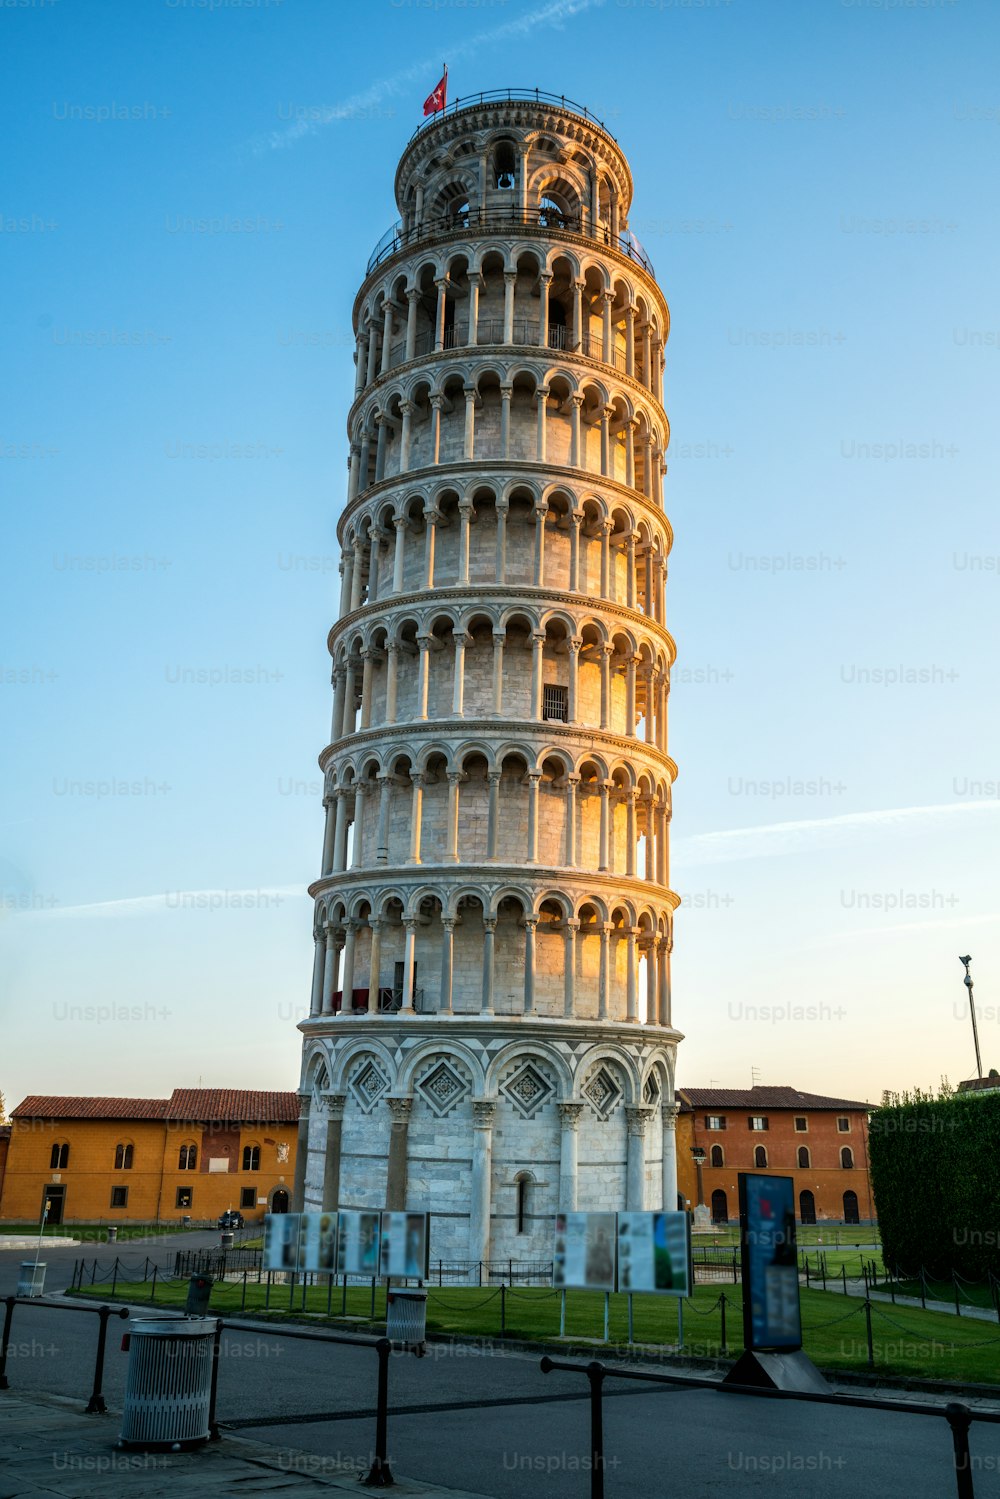 Torre Inclinada de Pisa em Pisa, Itália - Torre Inclinada de Pisa conhecida mundialmente por sua inclinação não intencional e famoso destino de viagem da Itália. Está situado perto da Catedral de Pisa.